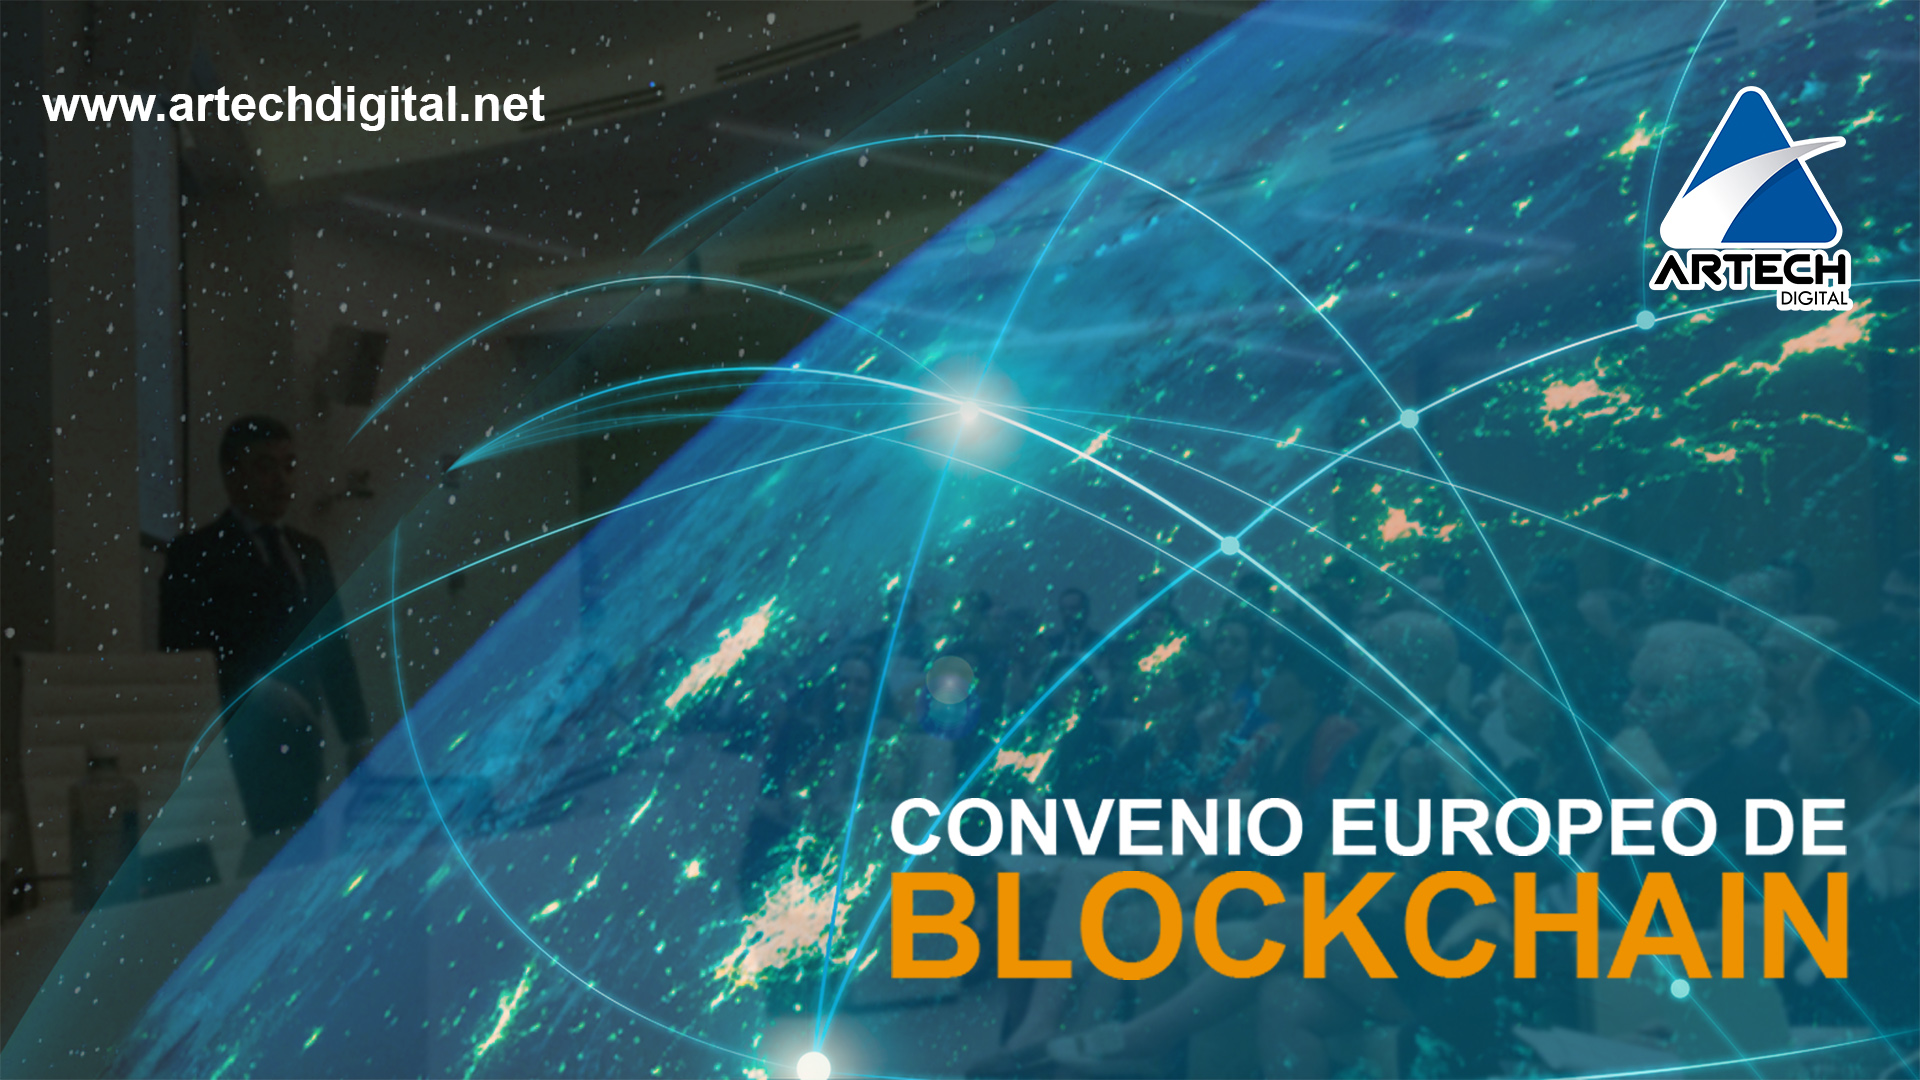 Convenio europeo de Blockchain - Artech Digital 